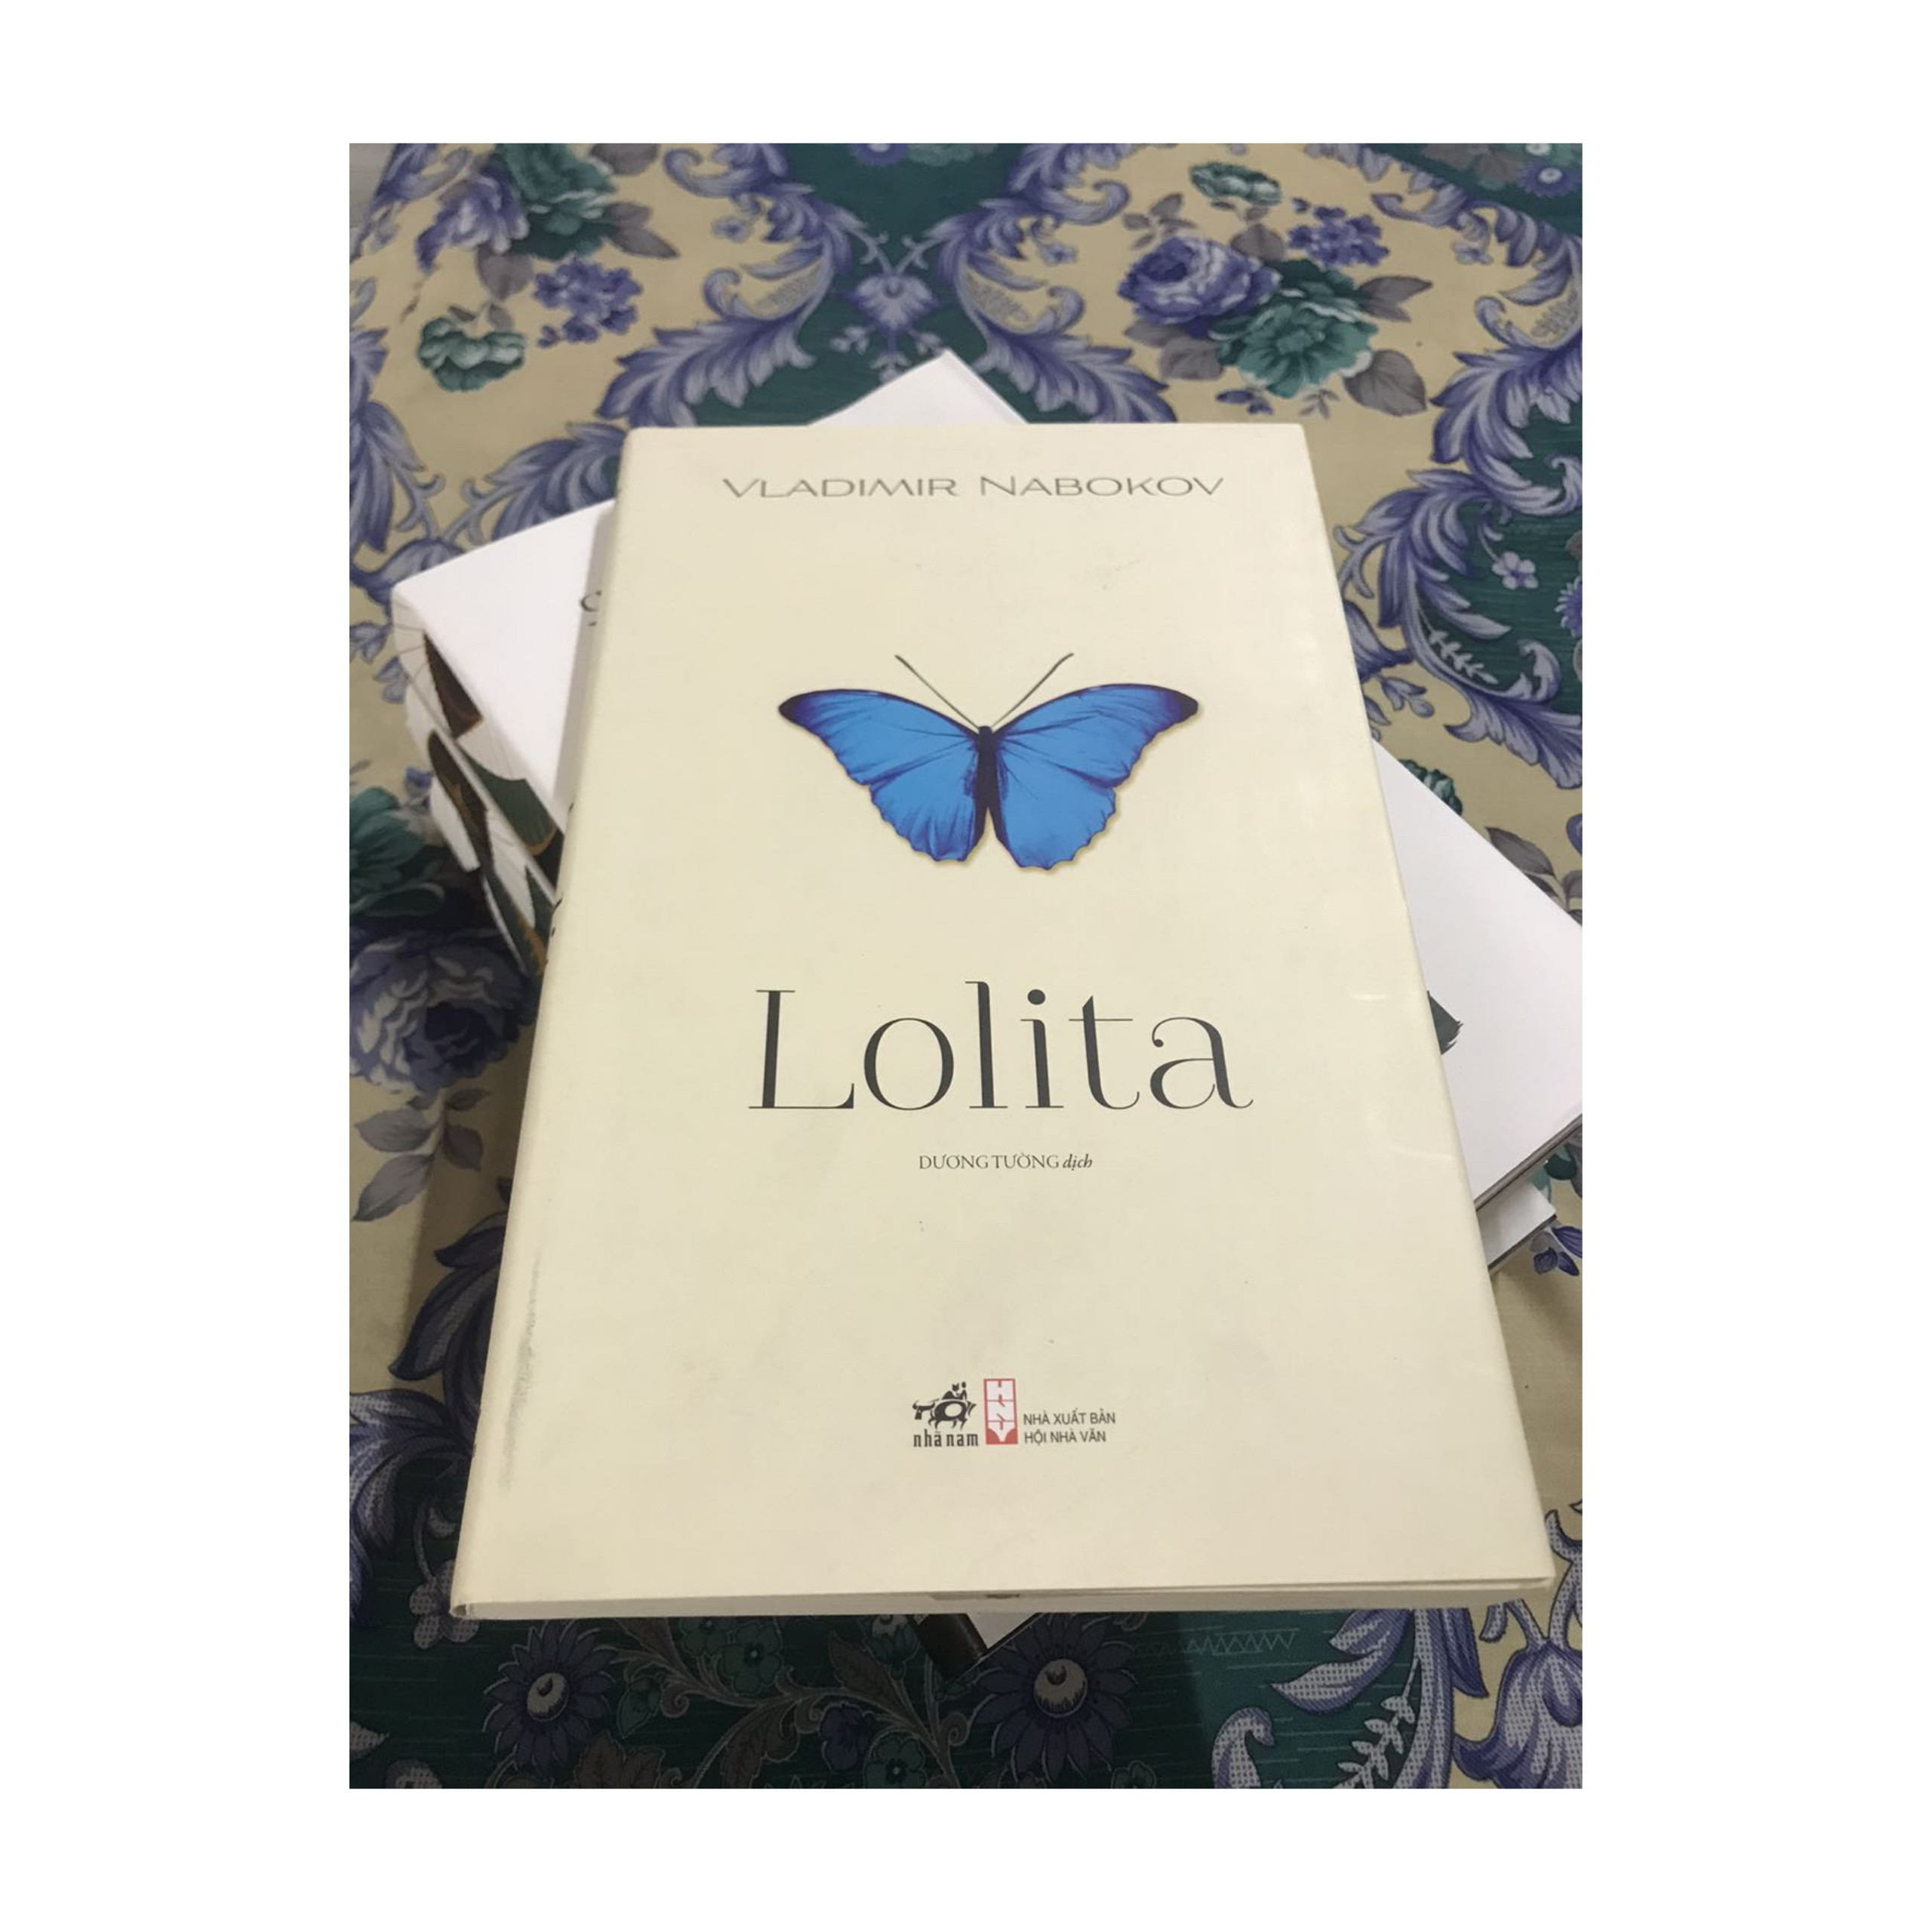 Combo 2 cuốn Tiểu Thuyết Kinh Điển: Lolita + Biên Niên Ký Chim Vặn Dây Cót / Tặng Kèm Bookmark Happy Life